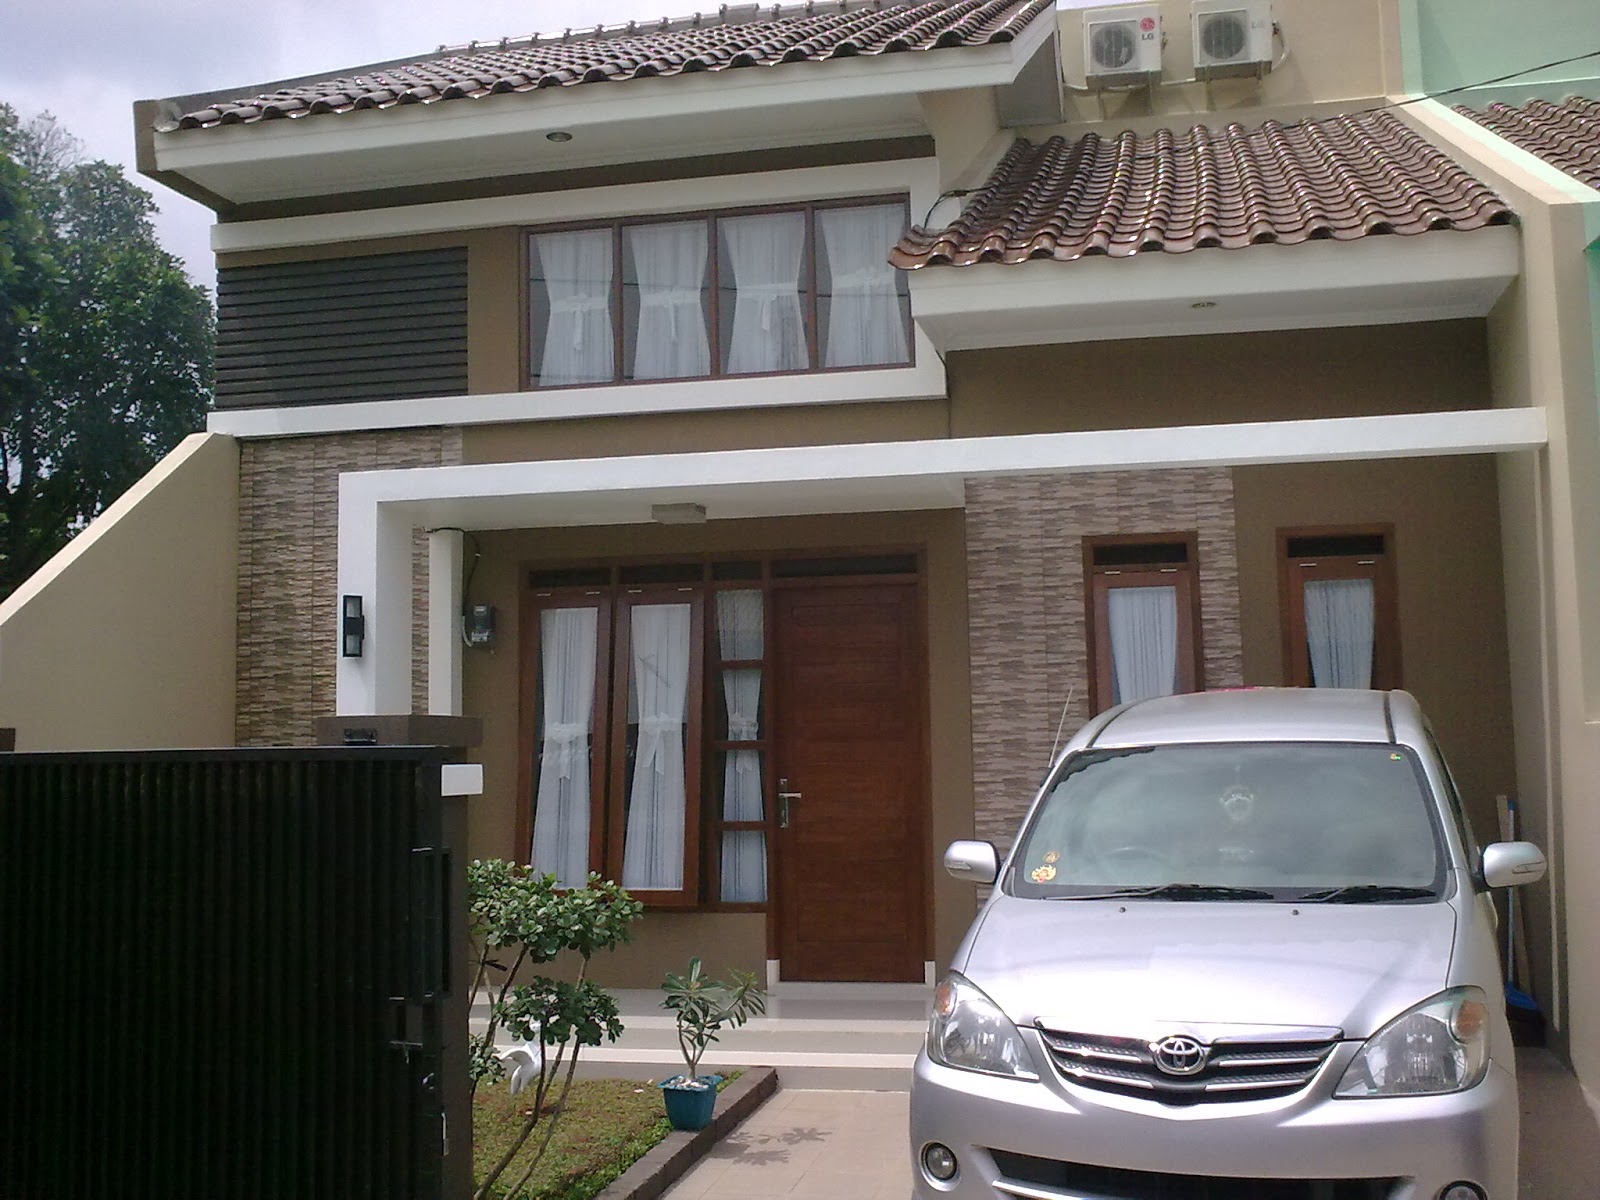  Rumah  Minimalis  2  Lantai  Dijual Di Malang  Desain Rumah  